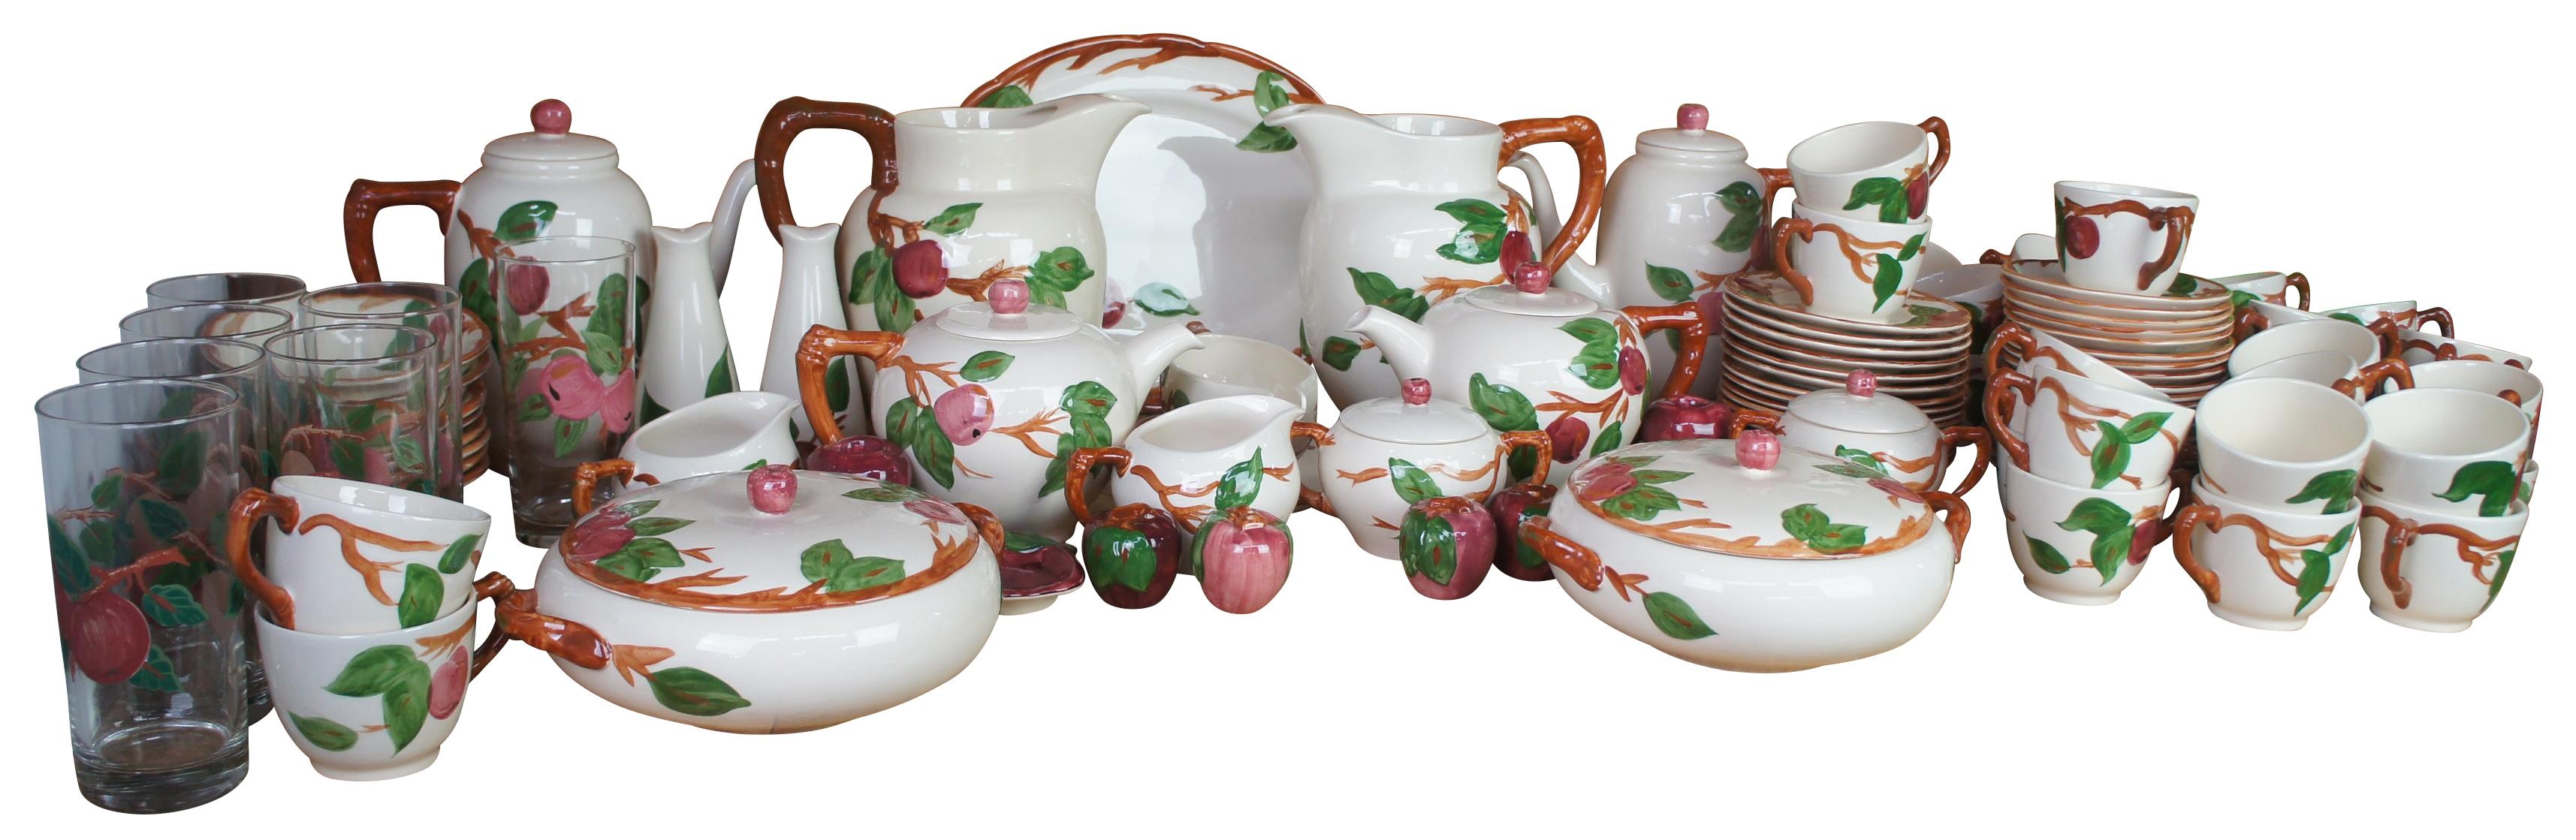 Ce service de porcelaine vintage au motif pomme de Franciscan comporte des doubles de nombreuses pièces adaptées aux grands rassemblements. Comprend 120 pièces peintes à la main. Fabriqué en Angleterre et aux États-Unis

Mesures : Plateau- 14